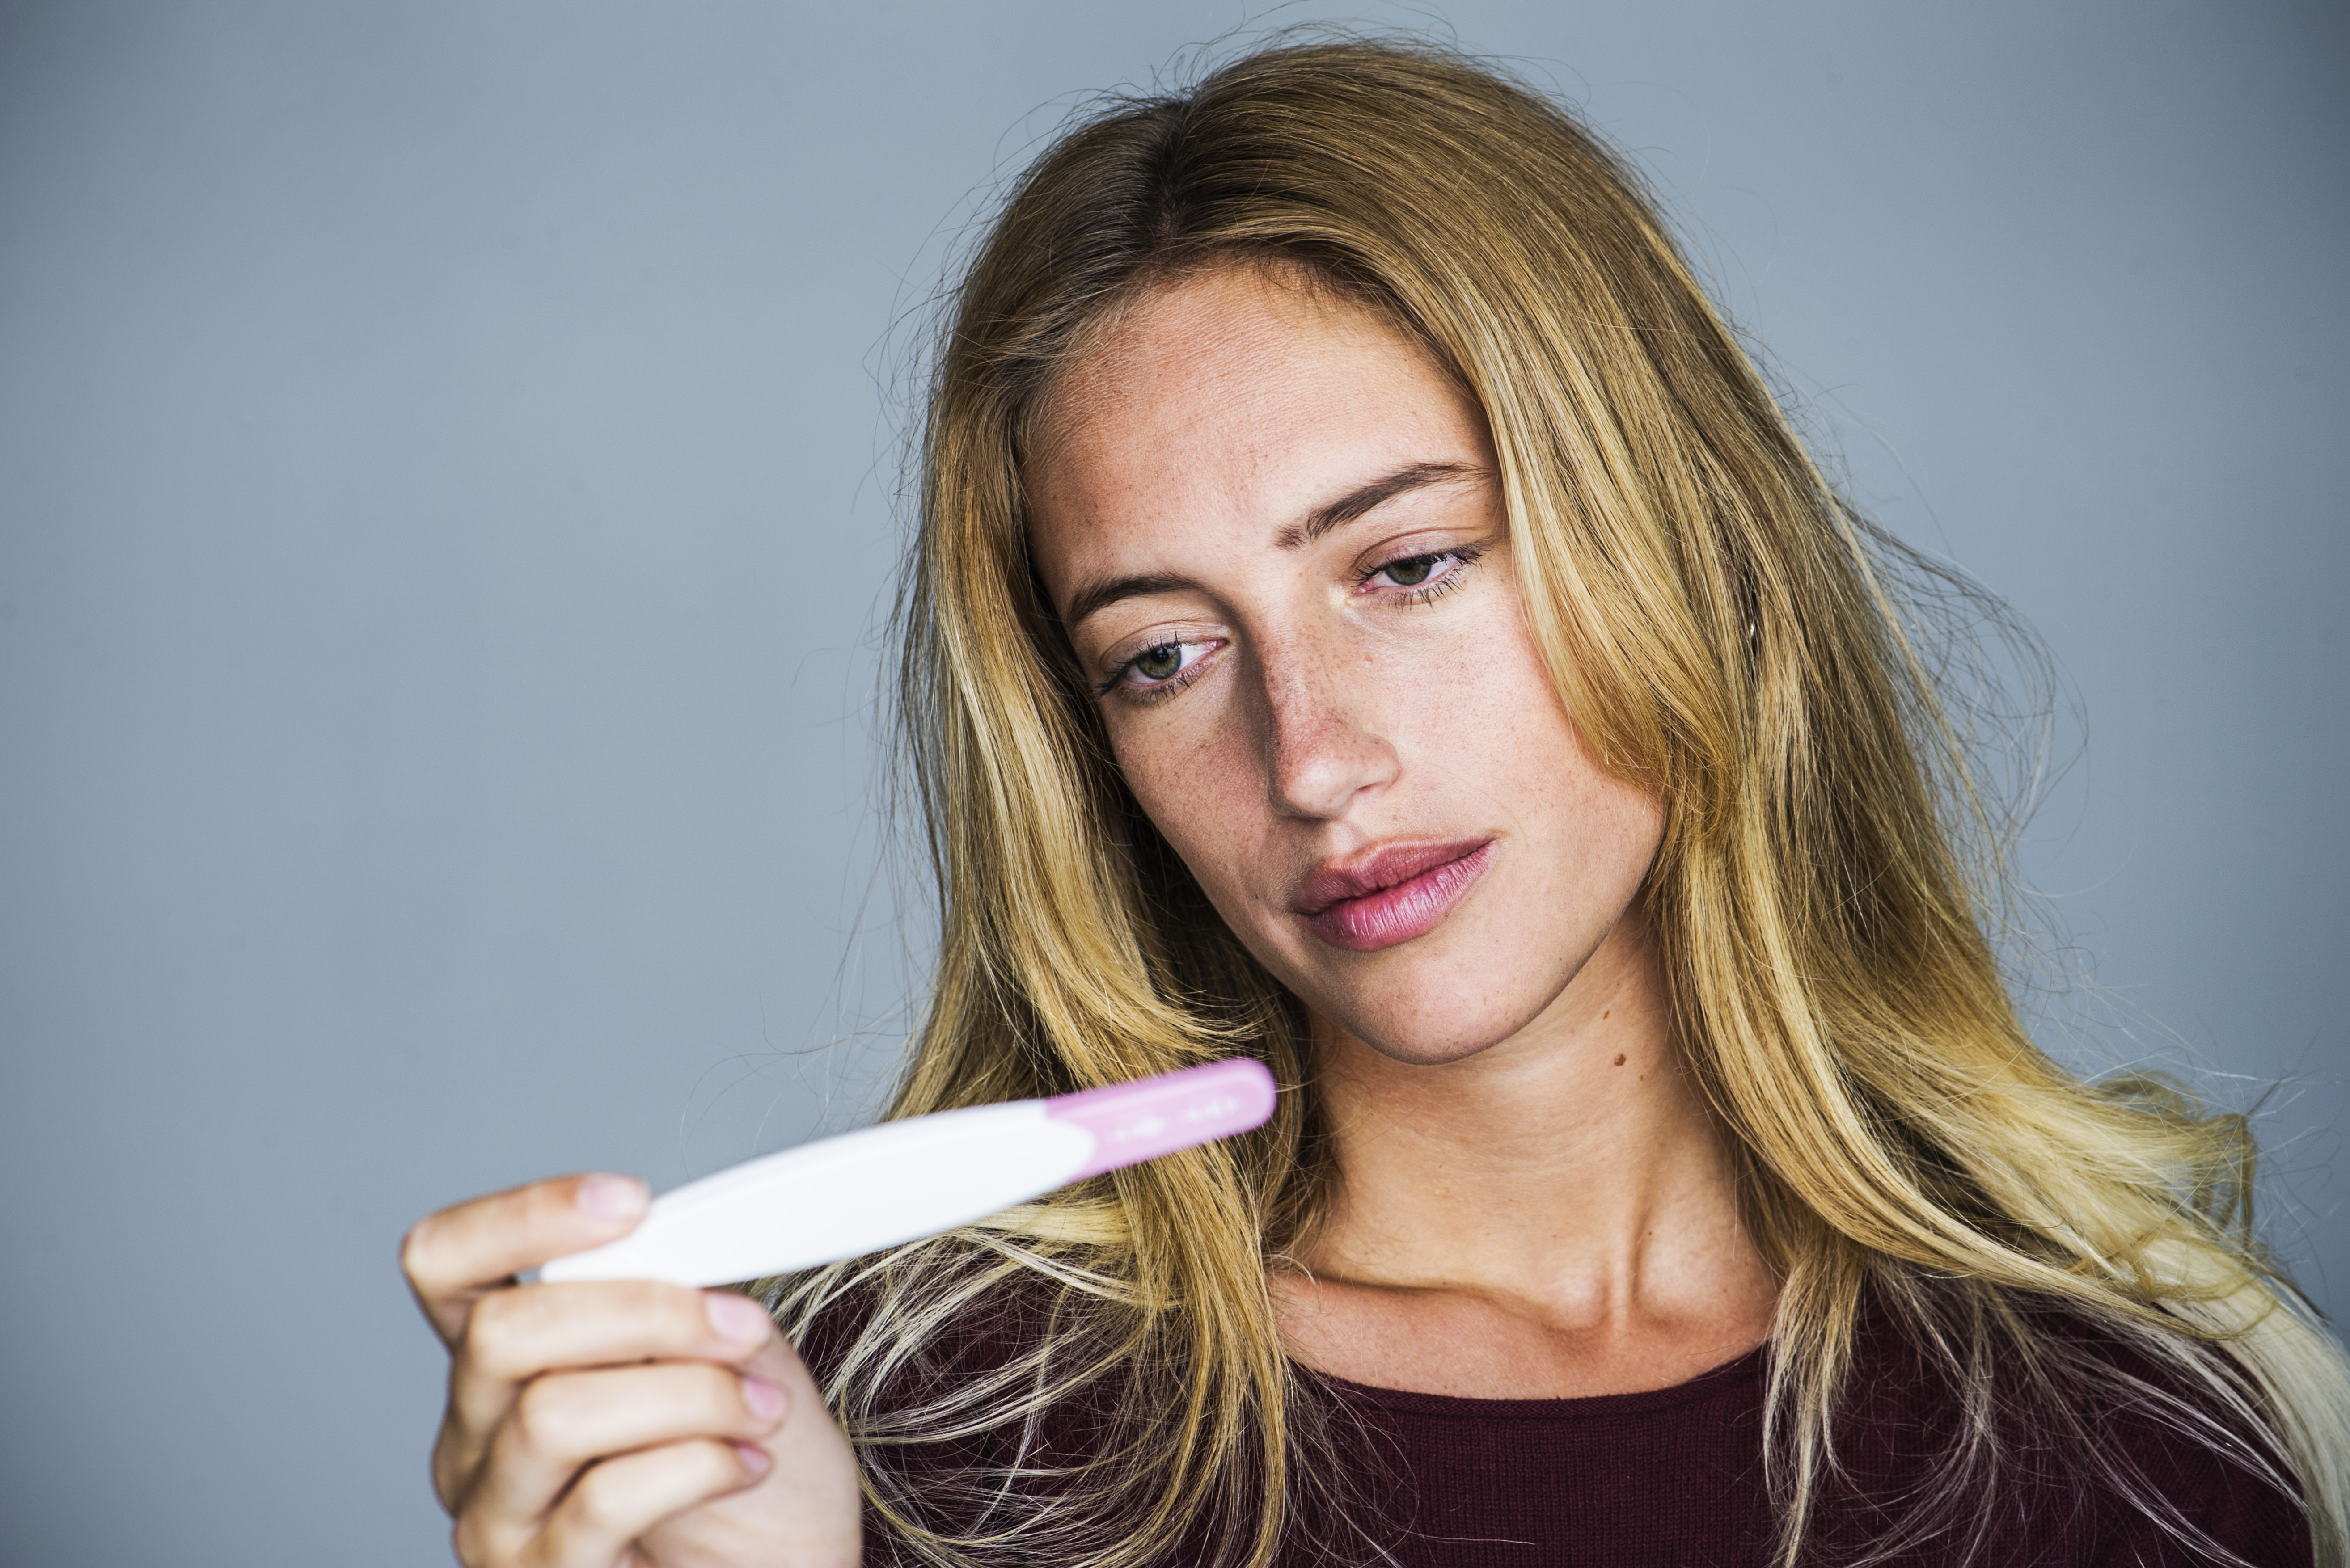 Junge Frau schaut mit enttäuschtem Gesichtsausdruck auf einen Schwangerschaftstest | Quelle: Getty Images